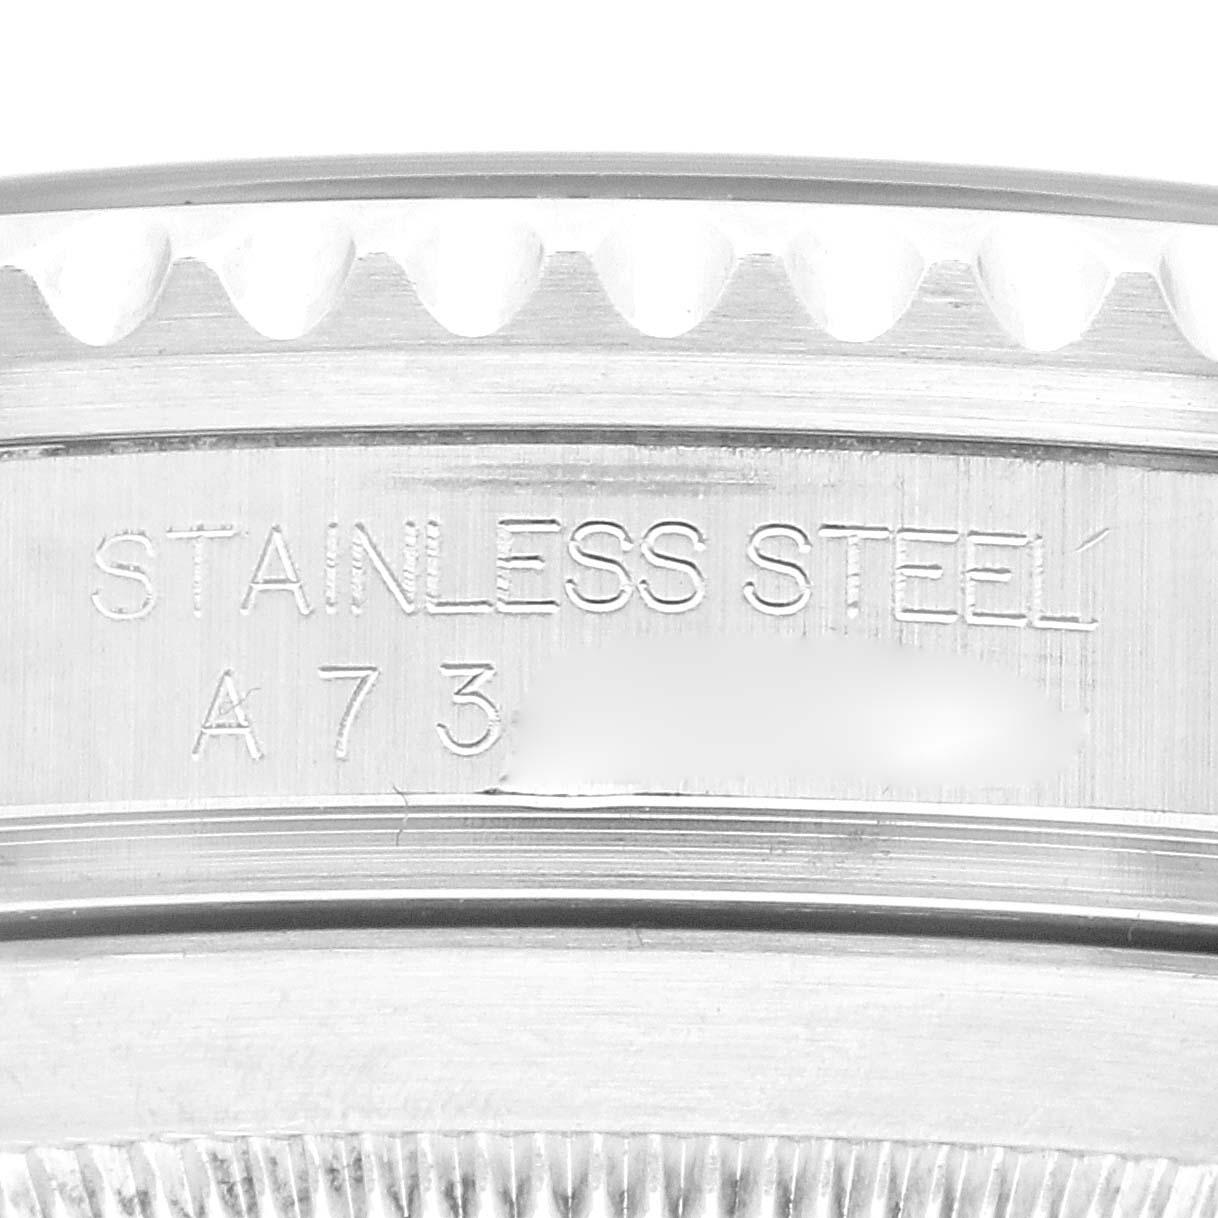 Rolex Submariner Datum schwarzes Zifferblatt Stahl Herrenuhr 16610 Box Papiere. Offiziell zertifiziertes Chronometerwerk mit automatischem Aufzug. Gehäuse aus Edelstahl mit einem Durchmesser von 40.0 mm. Rolex Logo auf der Krone. Spezielle einseitig